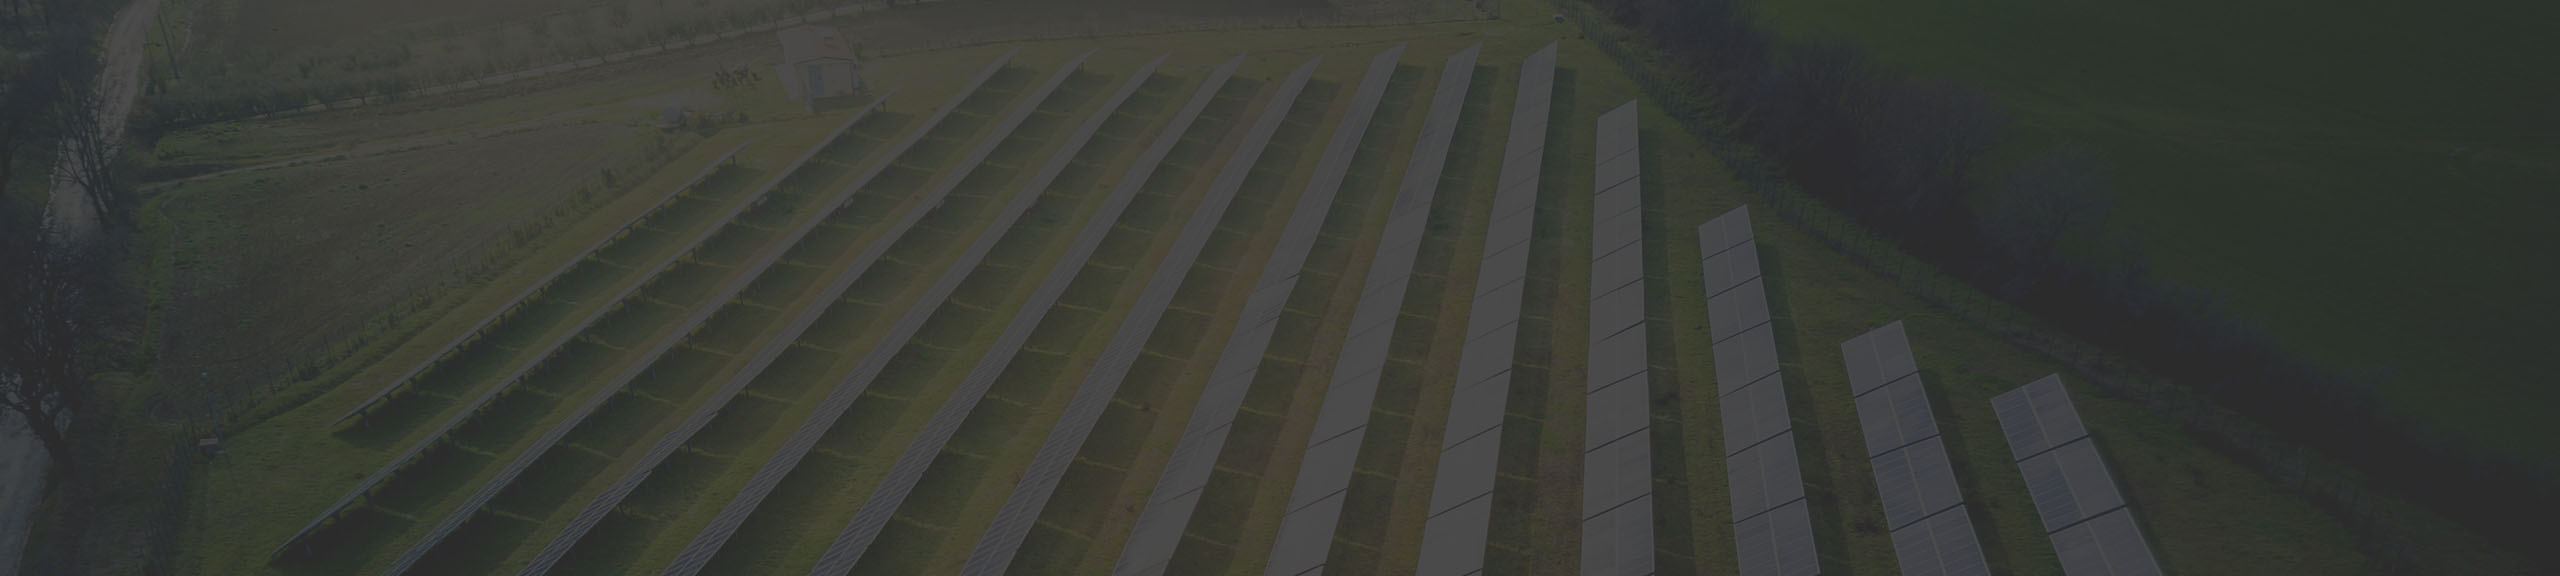 Grand champ vert avec des rangées de panneaux solaires carrés argentés